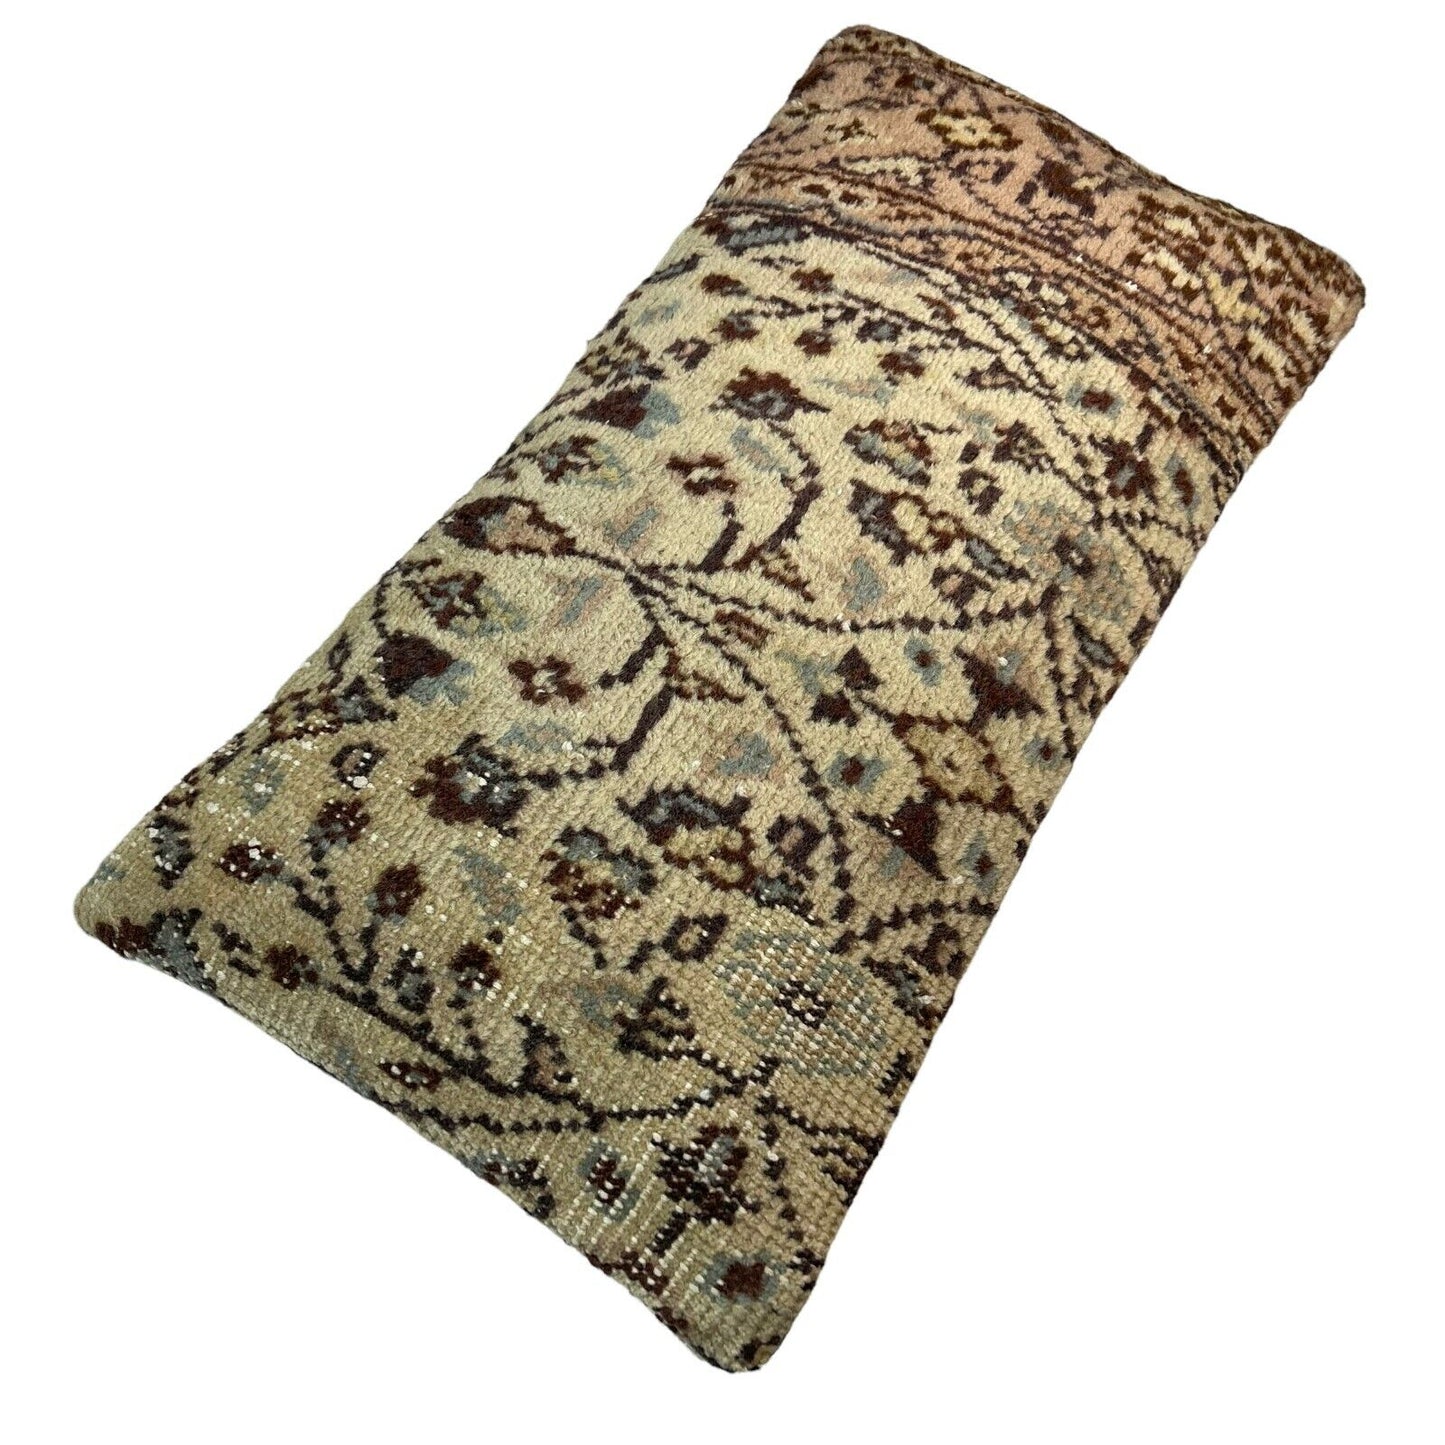 30x60 cm Vintage Türkisch Kissenbezug , Vintage Turkish Cushion Cover